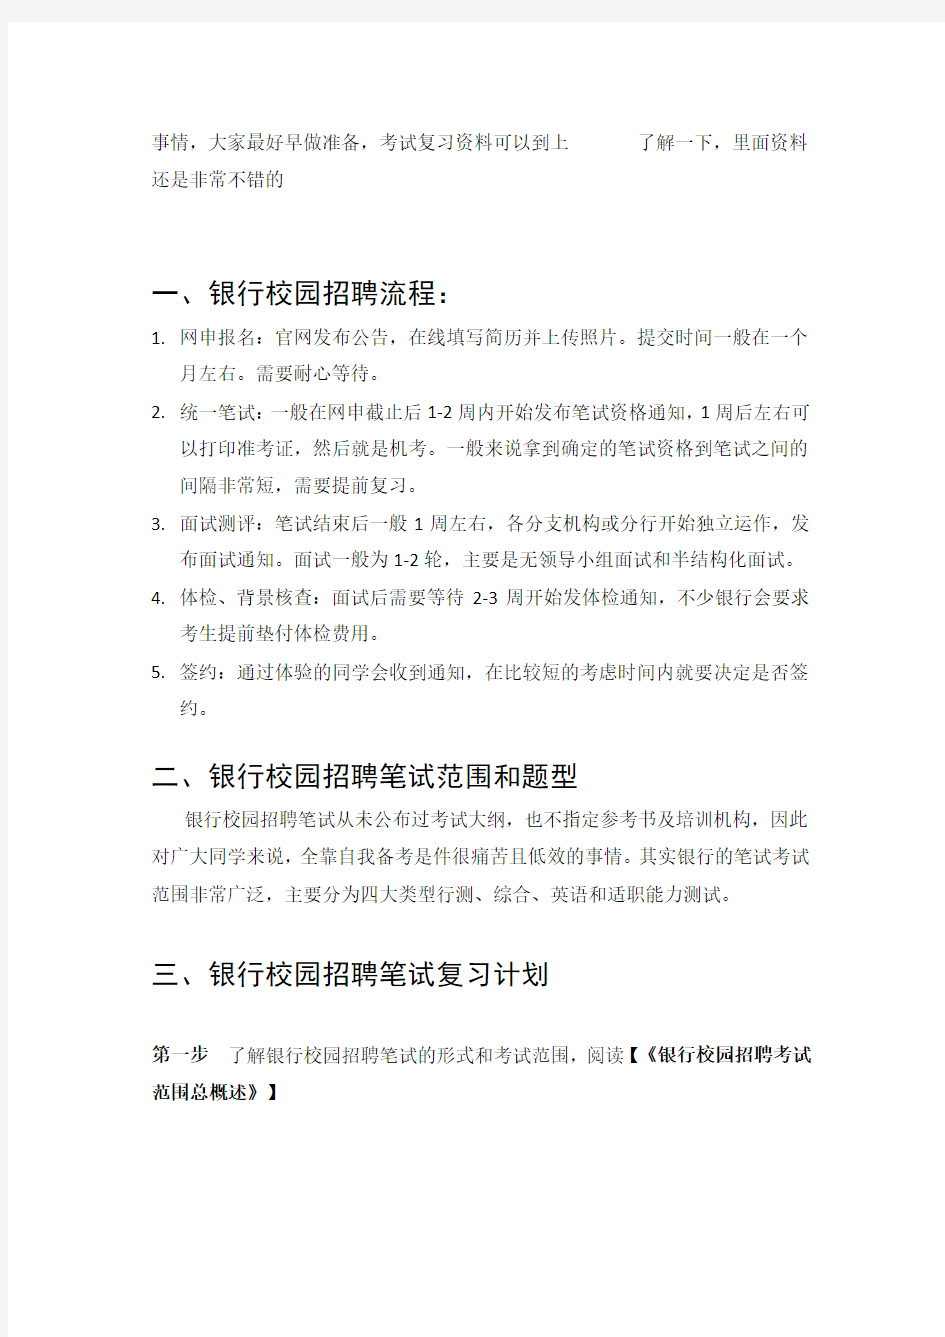 中国银行招聘考试笔试题目试卷--历年考试真题